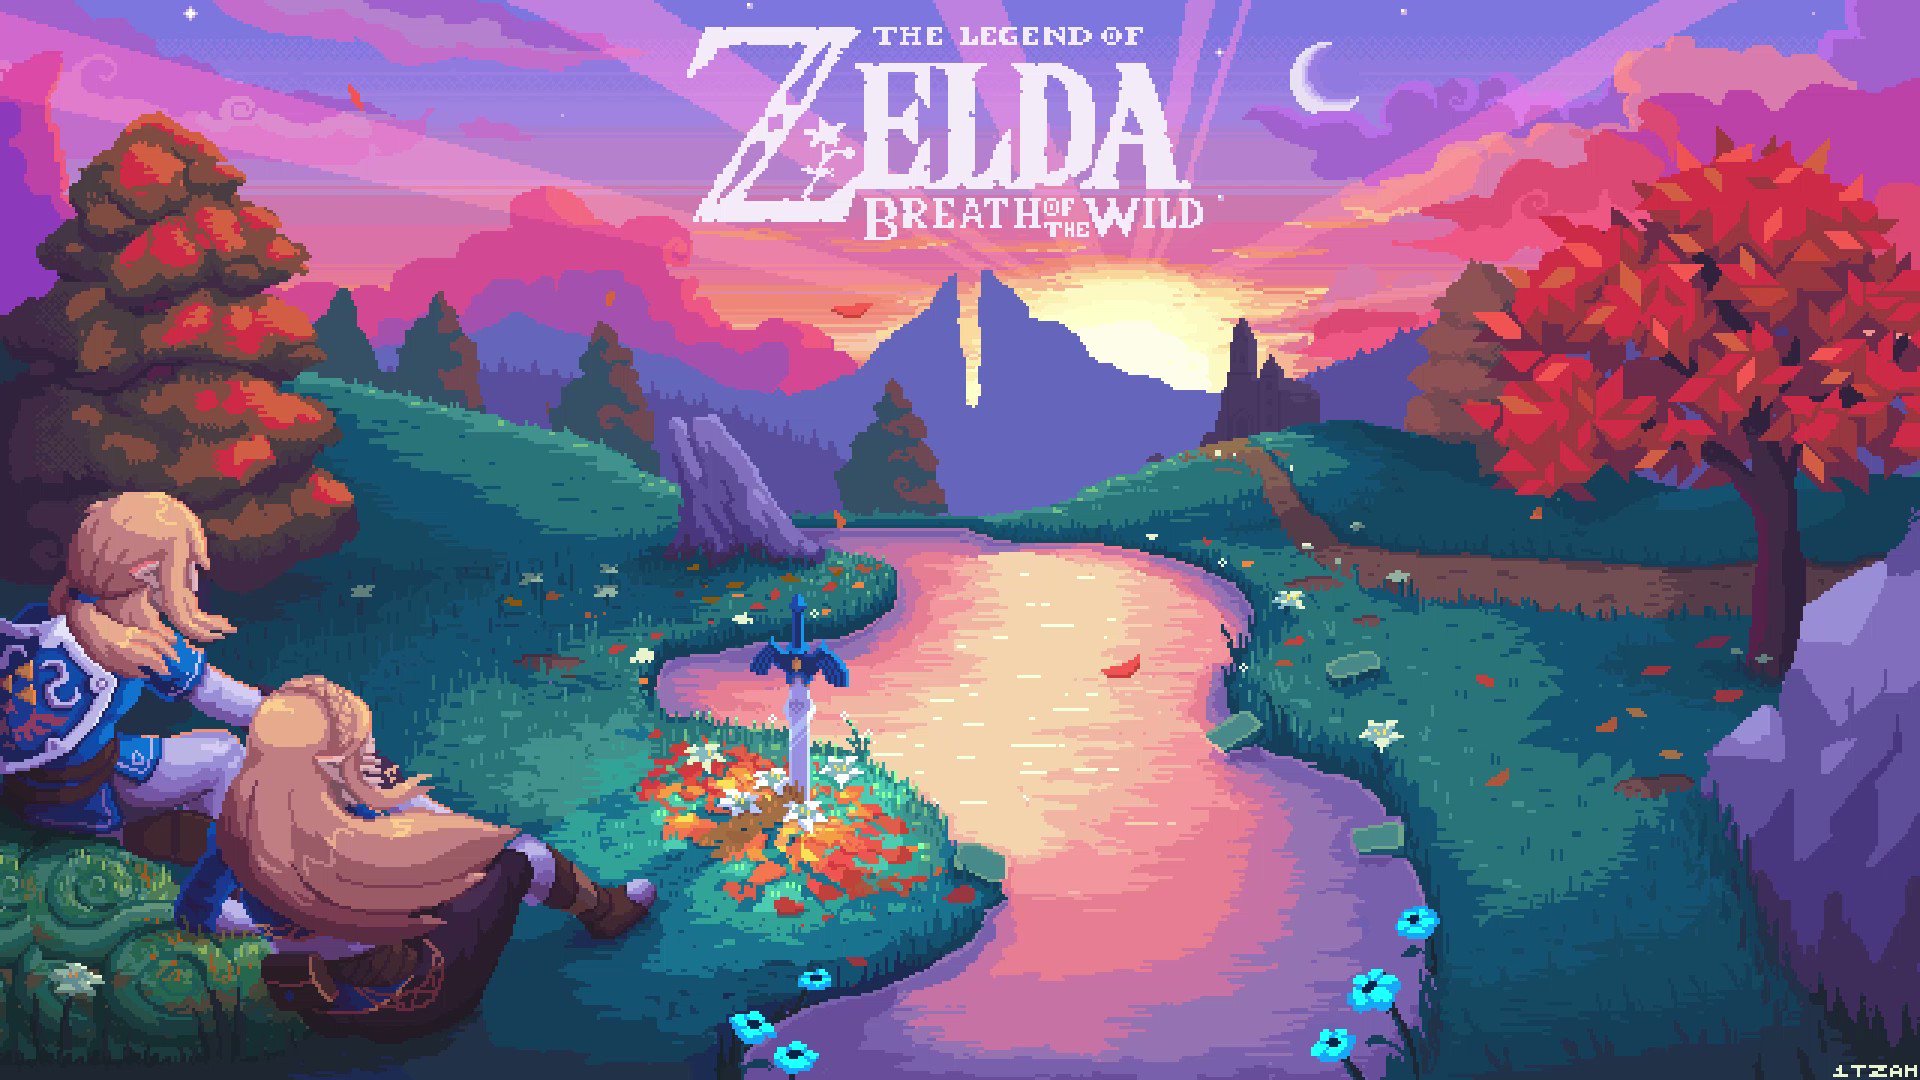 Download The Legend of Zelda: Breath of the Wild Wallpaper | Wallpapers.com